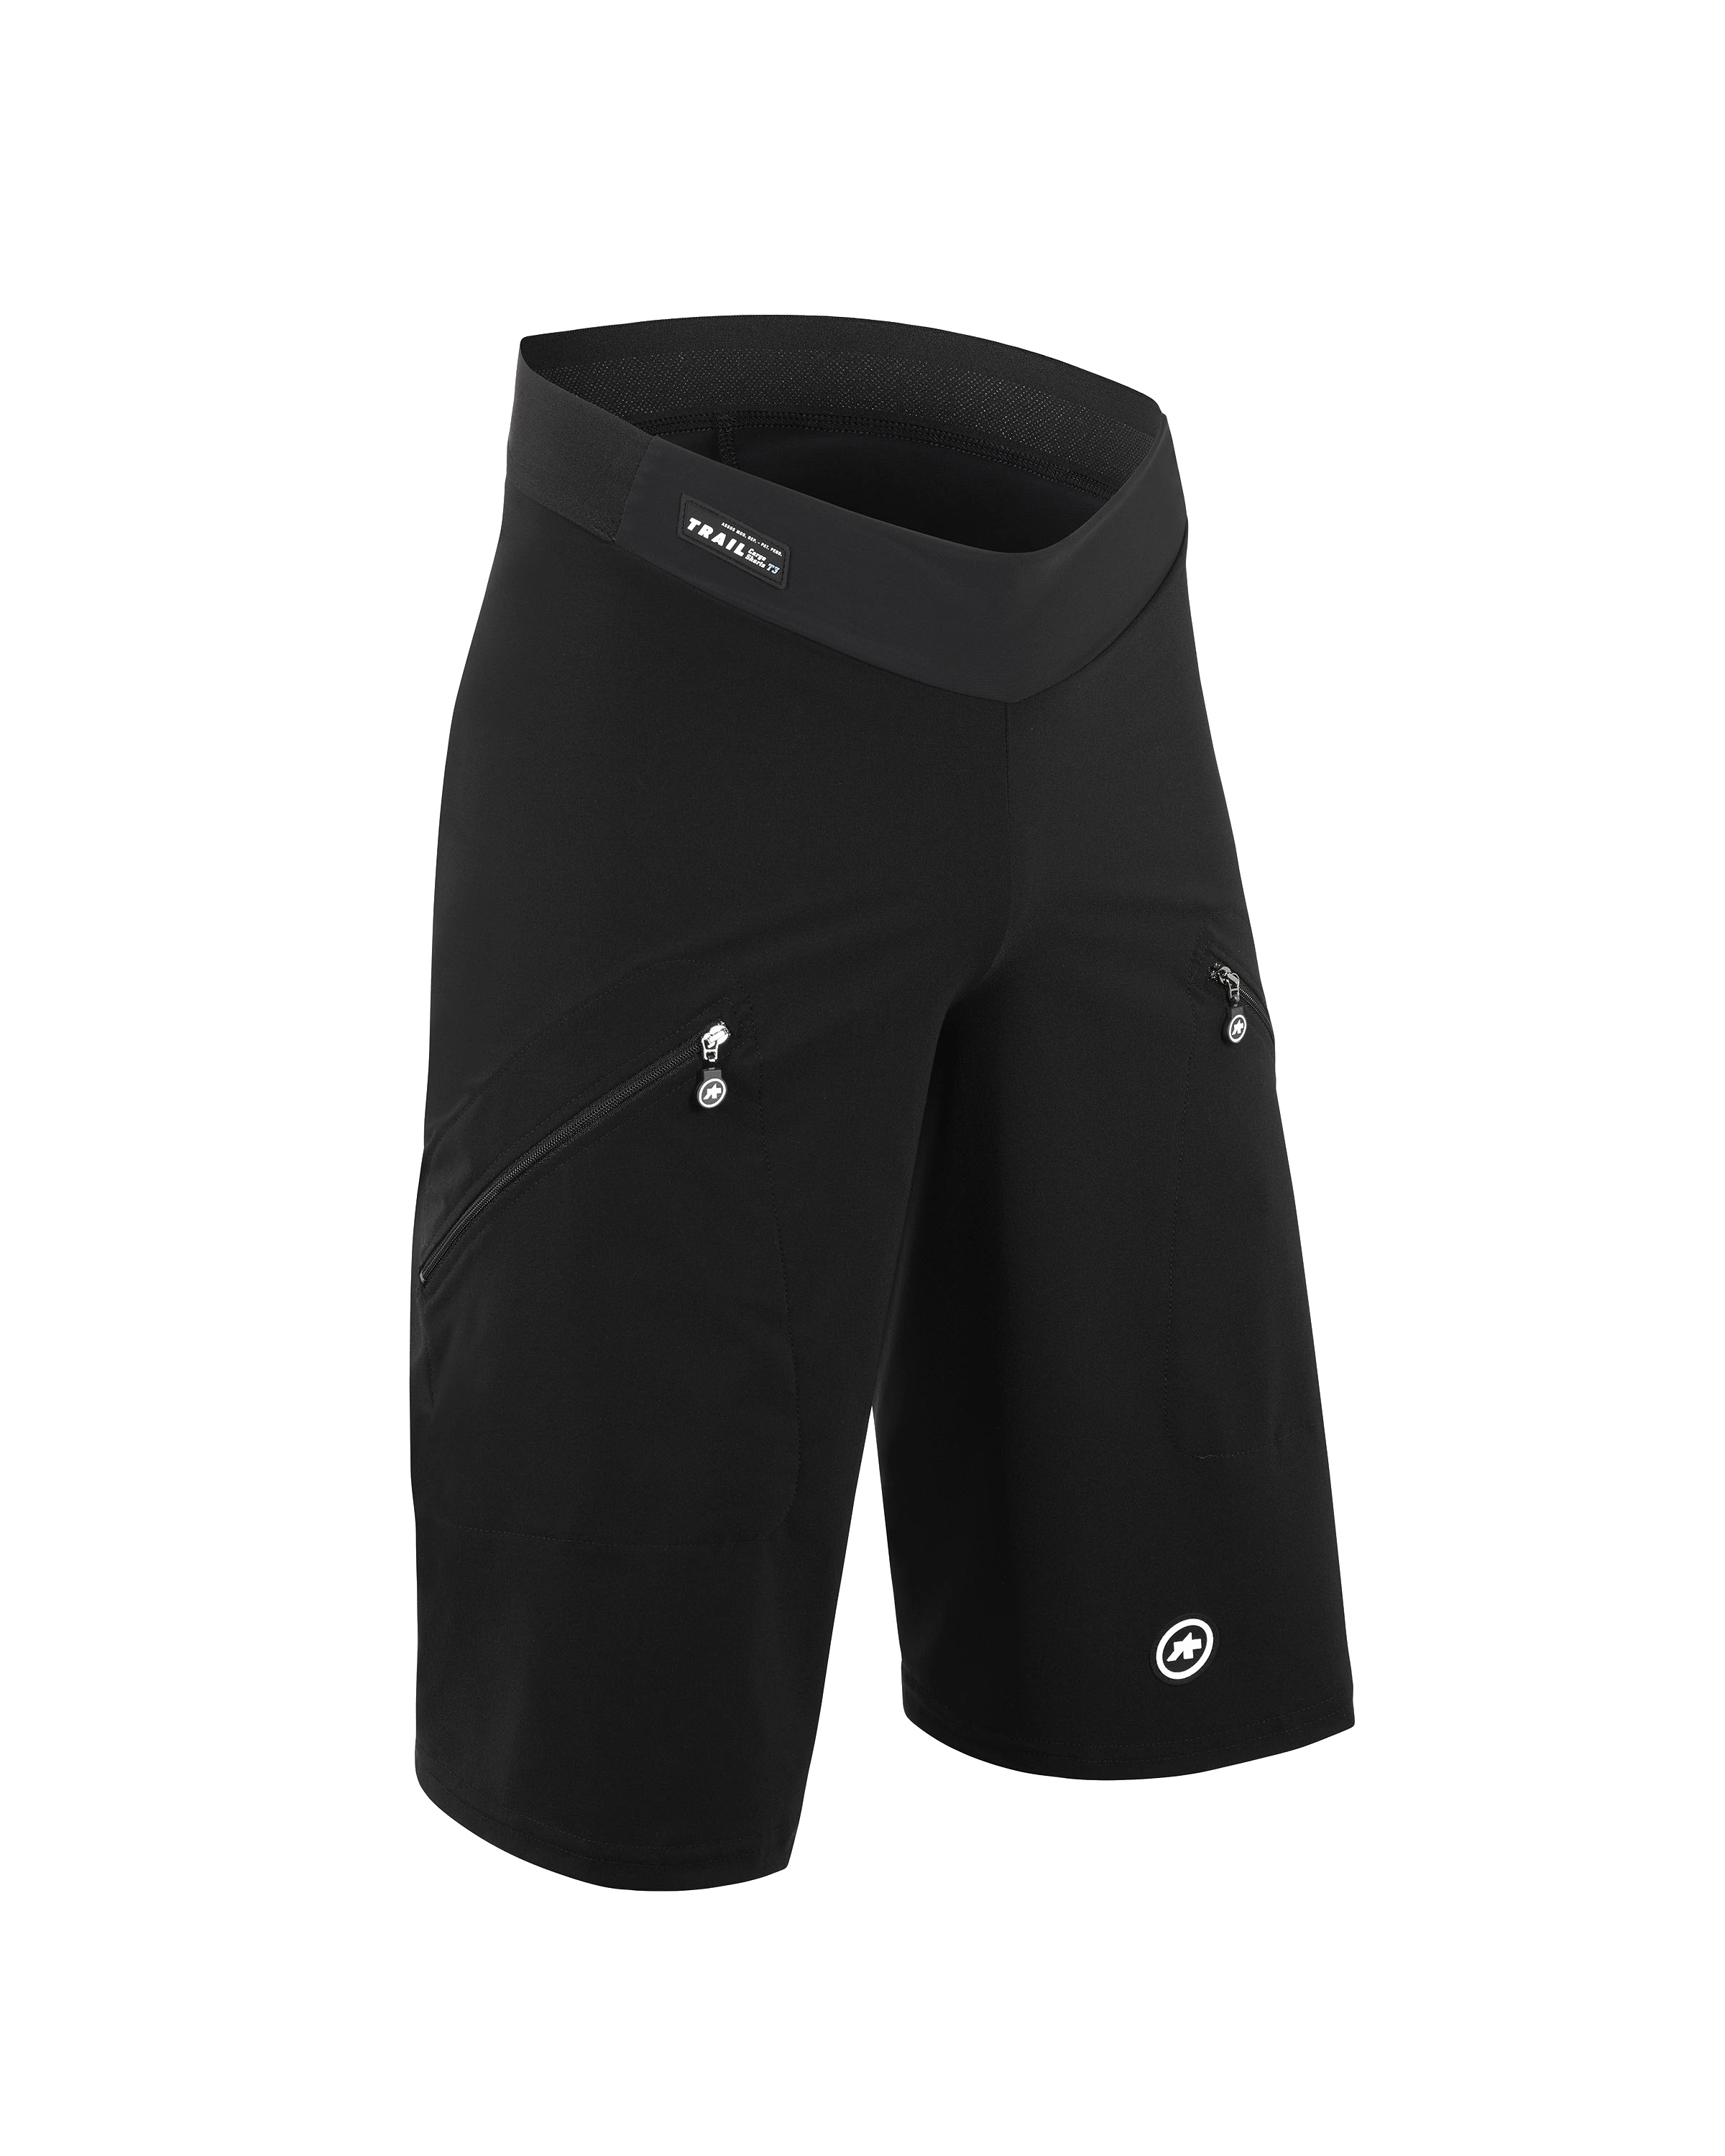 Велошорты ASSOS Trail Cargo Shorts T3 Black Series, мужские, черные, L